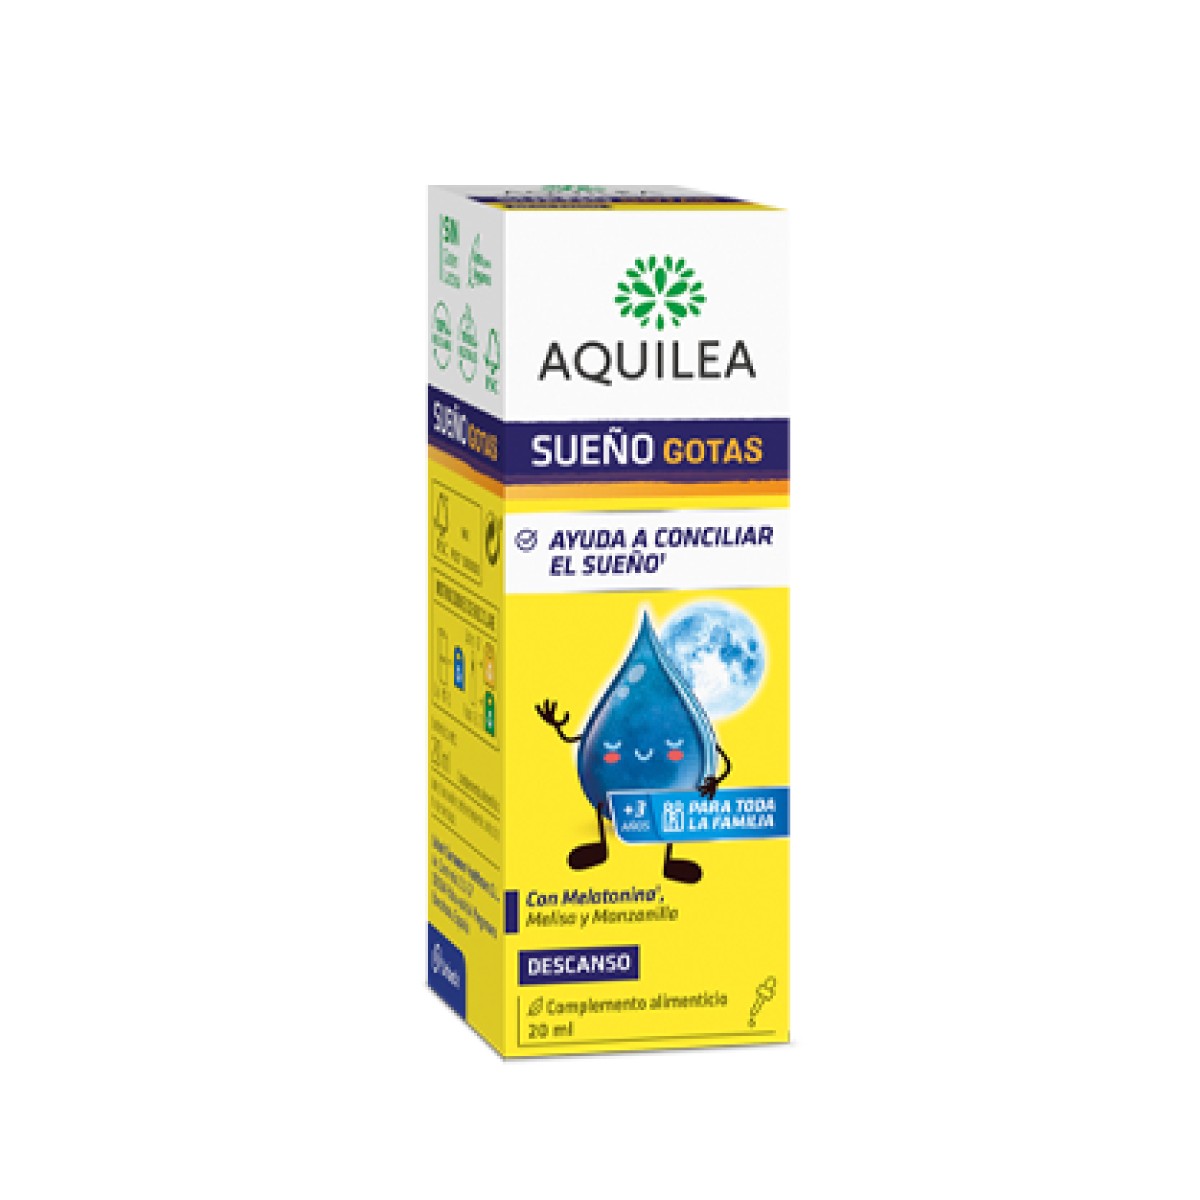 Aquilea Sleep Drops, 20 ml